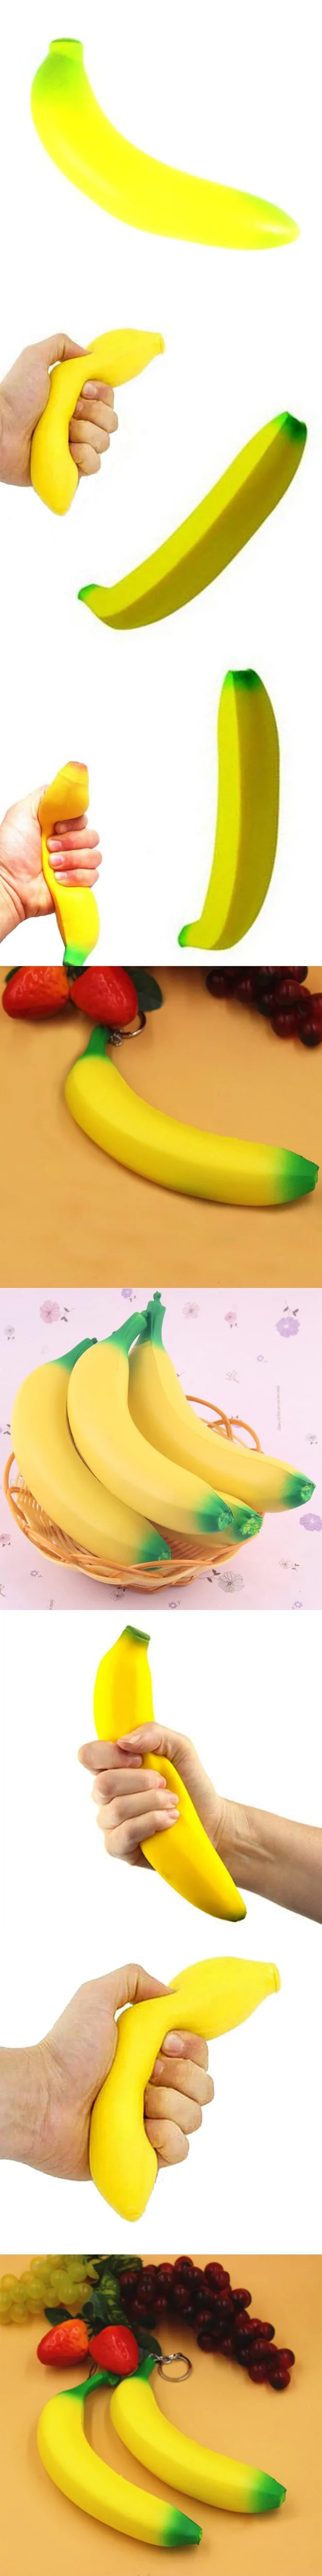 Сожмите «сожми банан» беспокойная игрушка очень медленно принимает начальную форму рост моделирования фрукты мягкий хлеб с ароматом сливок забавная игрушка подарок для взрослые с СДВГ малыш